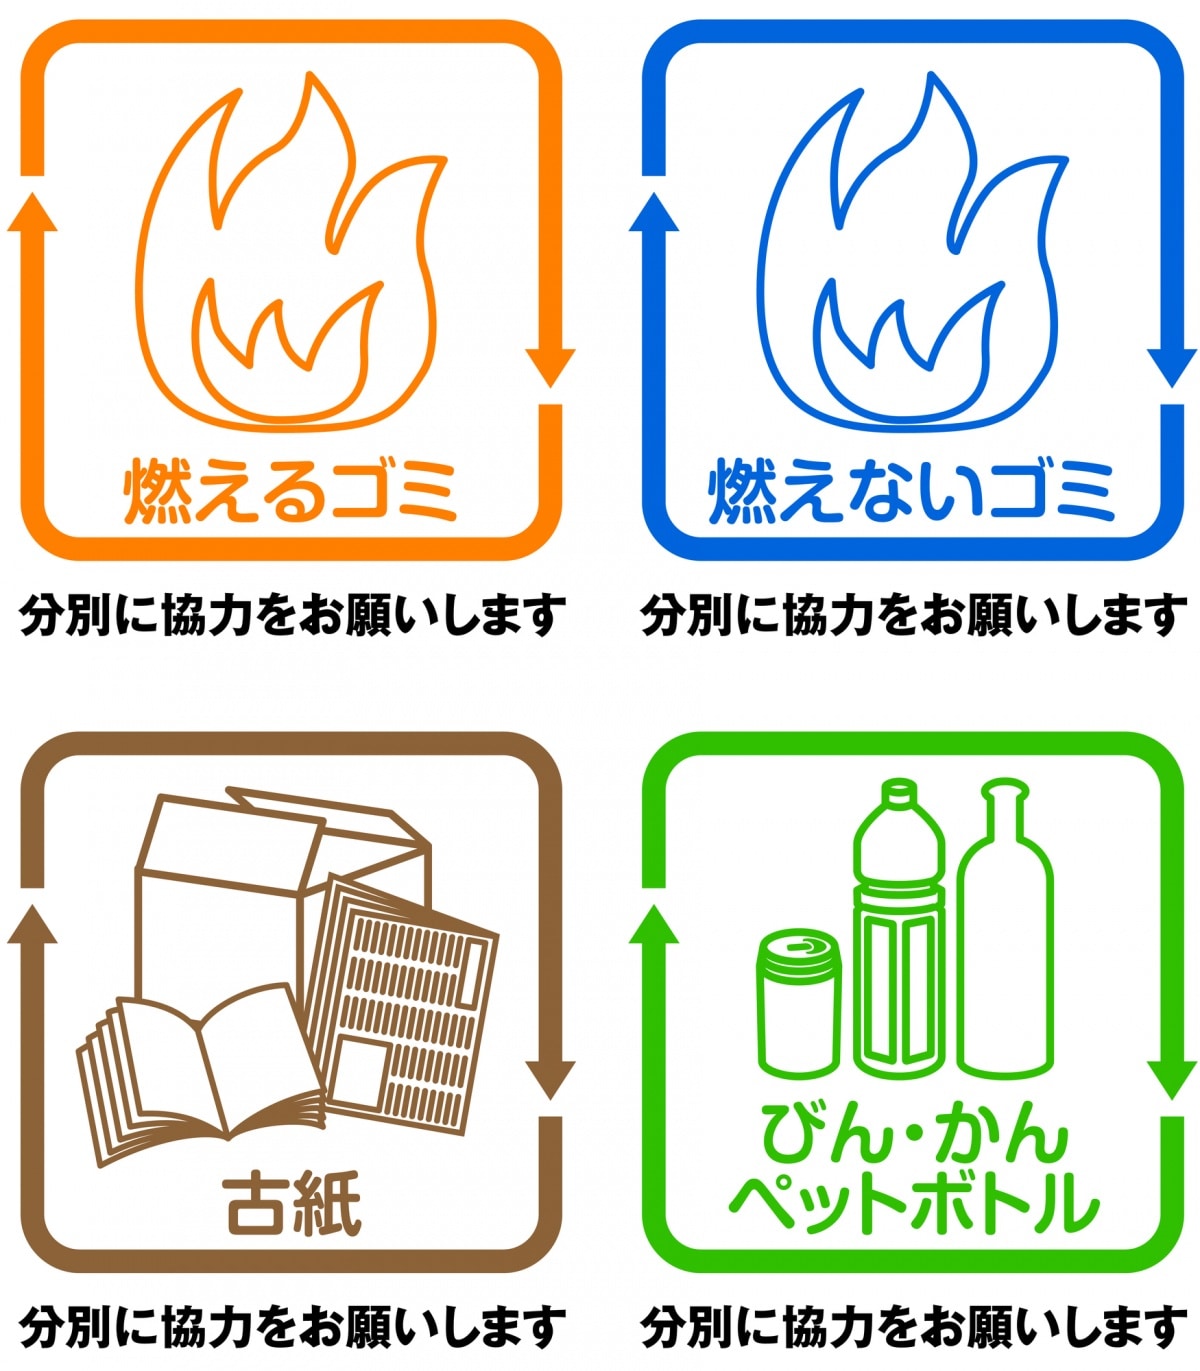 Types of Garbage